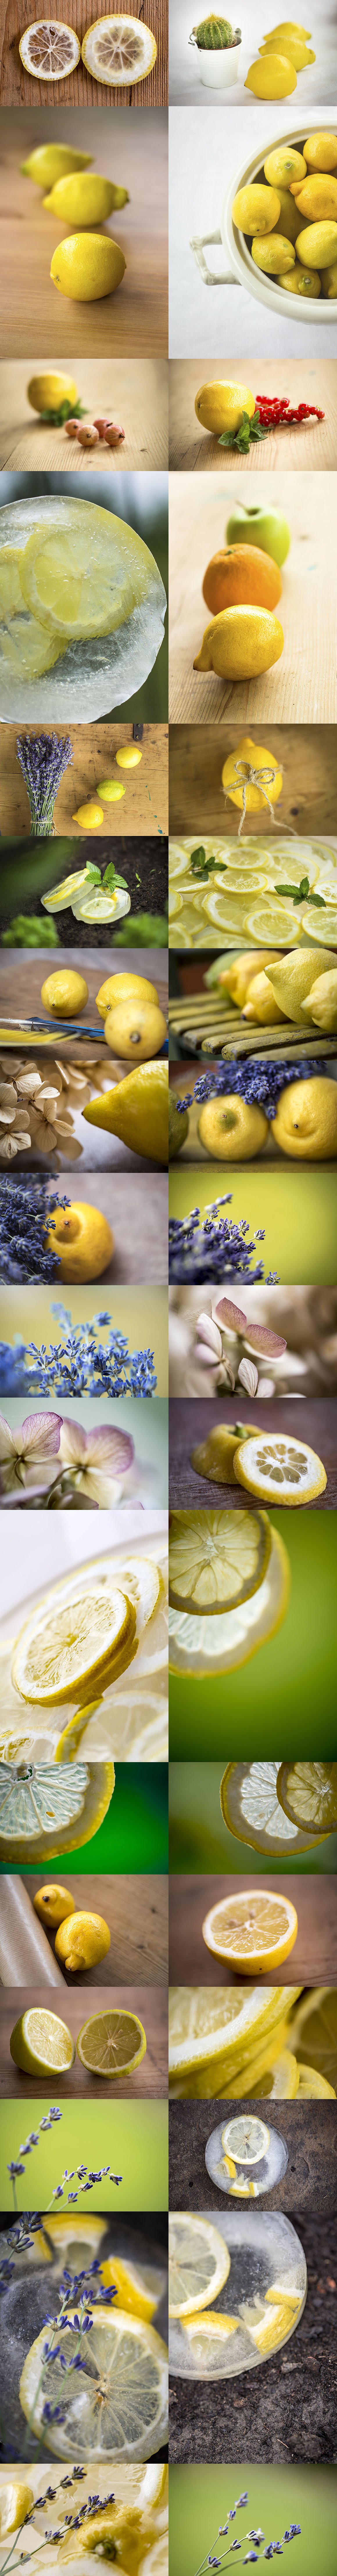 柠檬特写镜头高清照片素材 Fresh Lemon – Photos & Graphics插图12